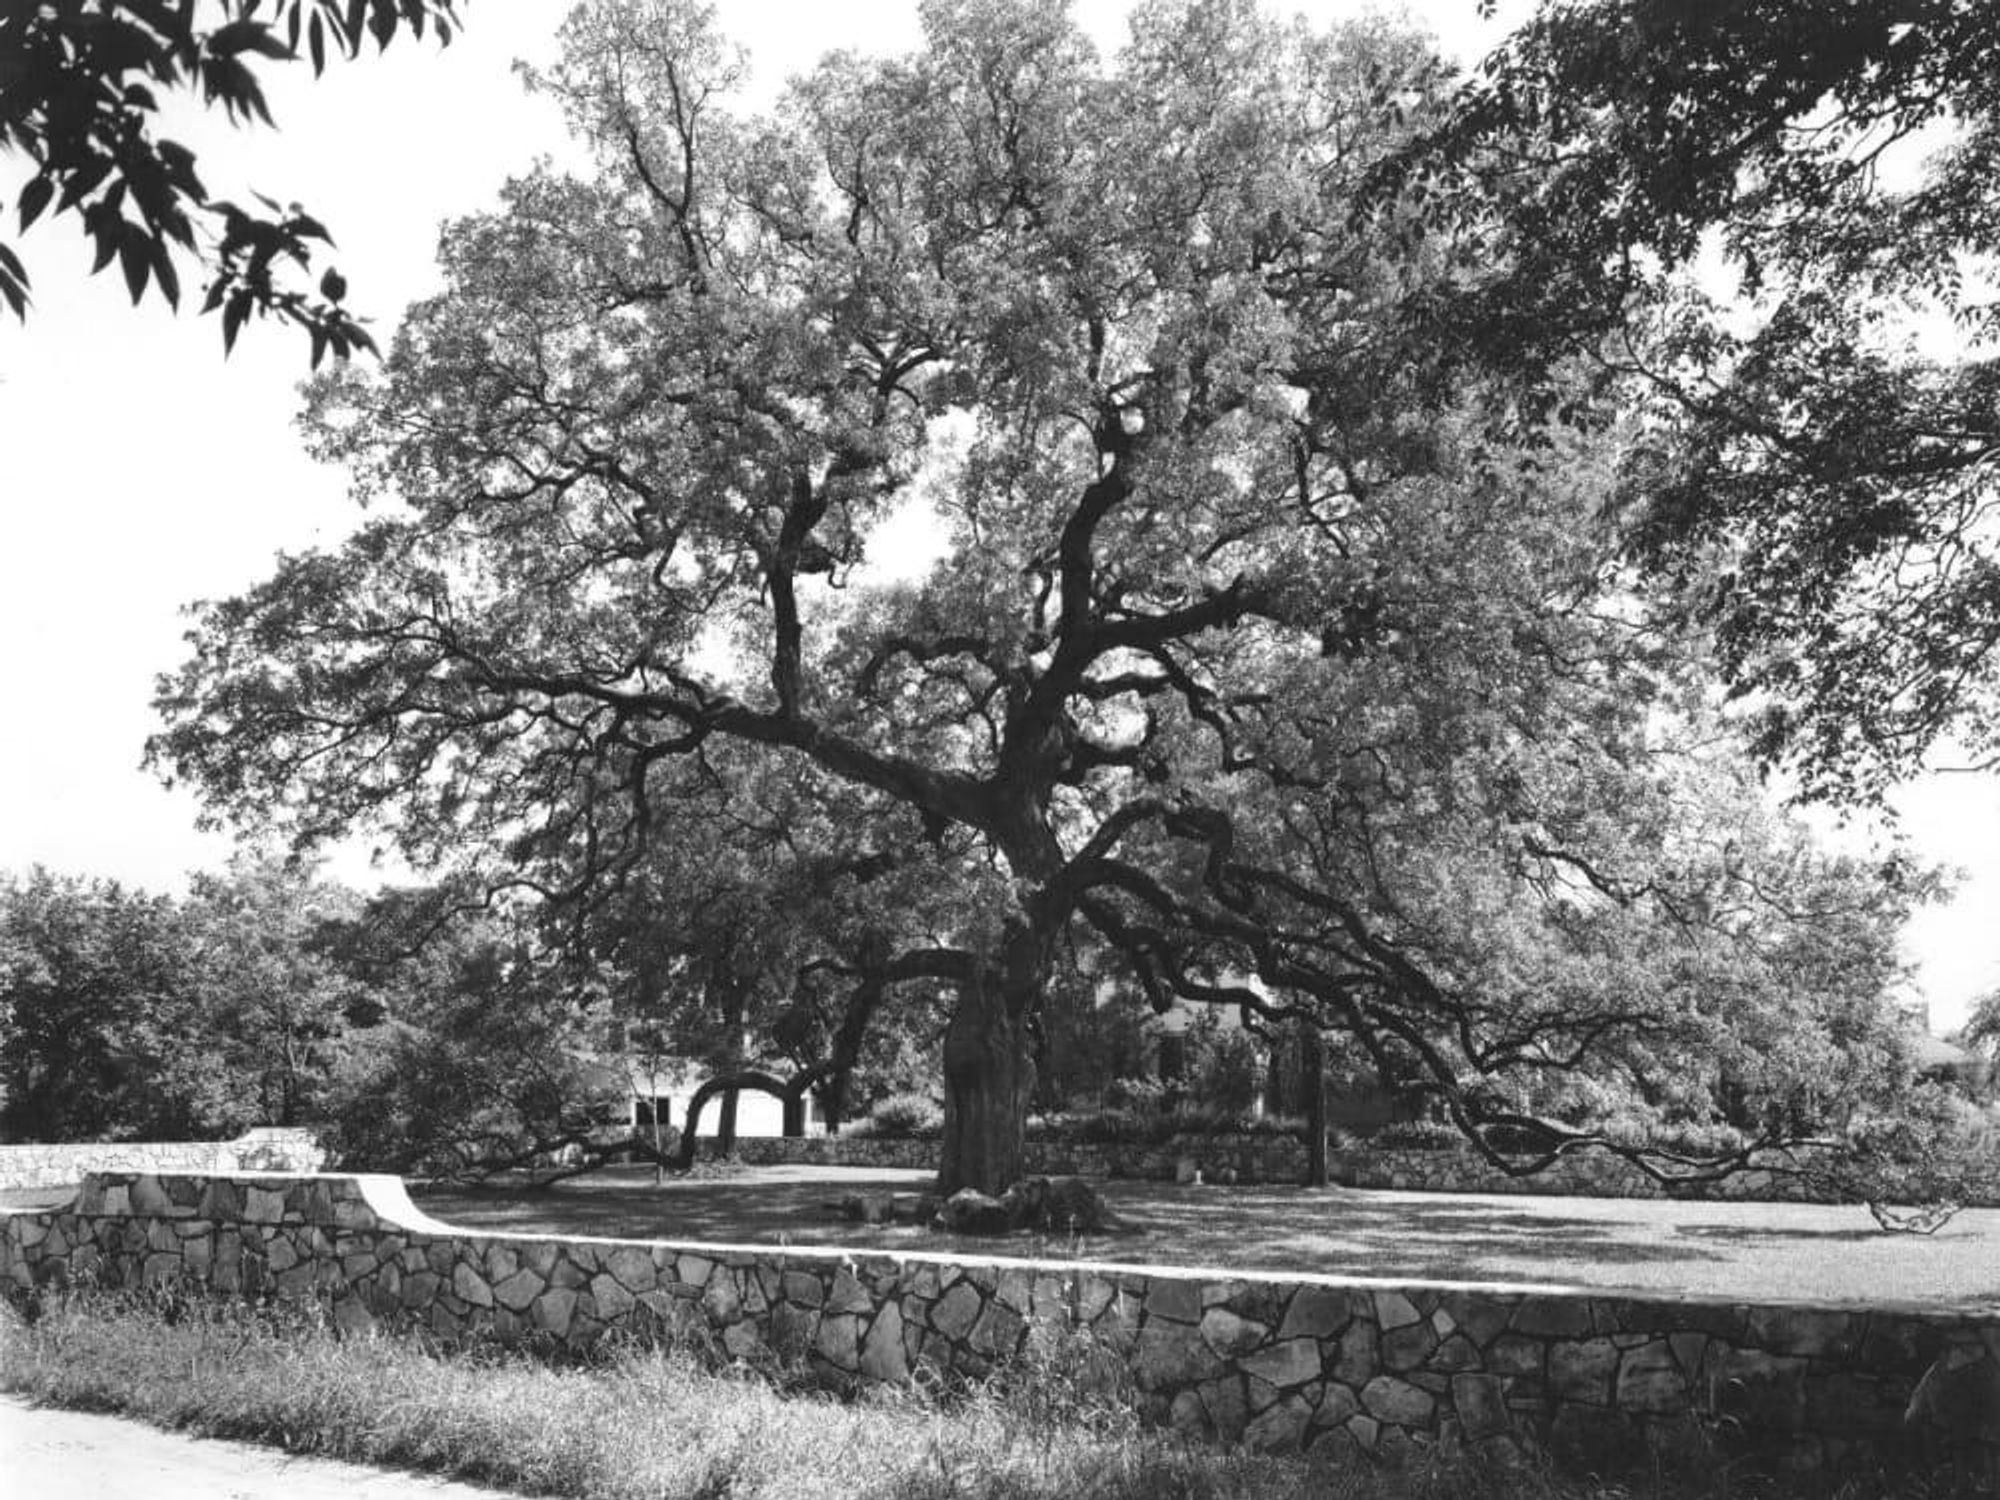 Treaty Oak Austin live oak tree